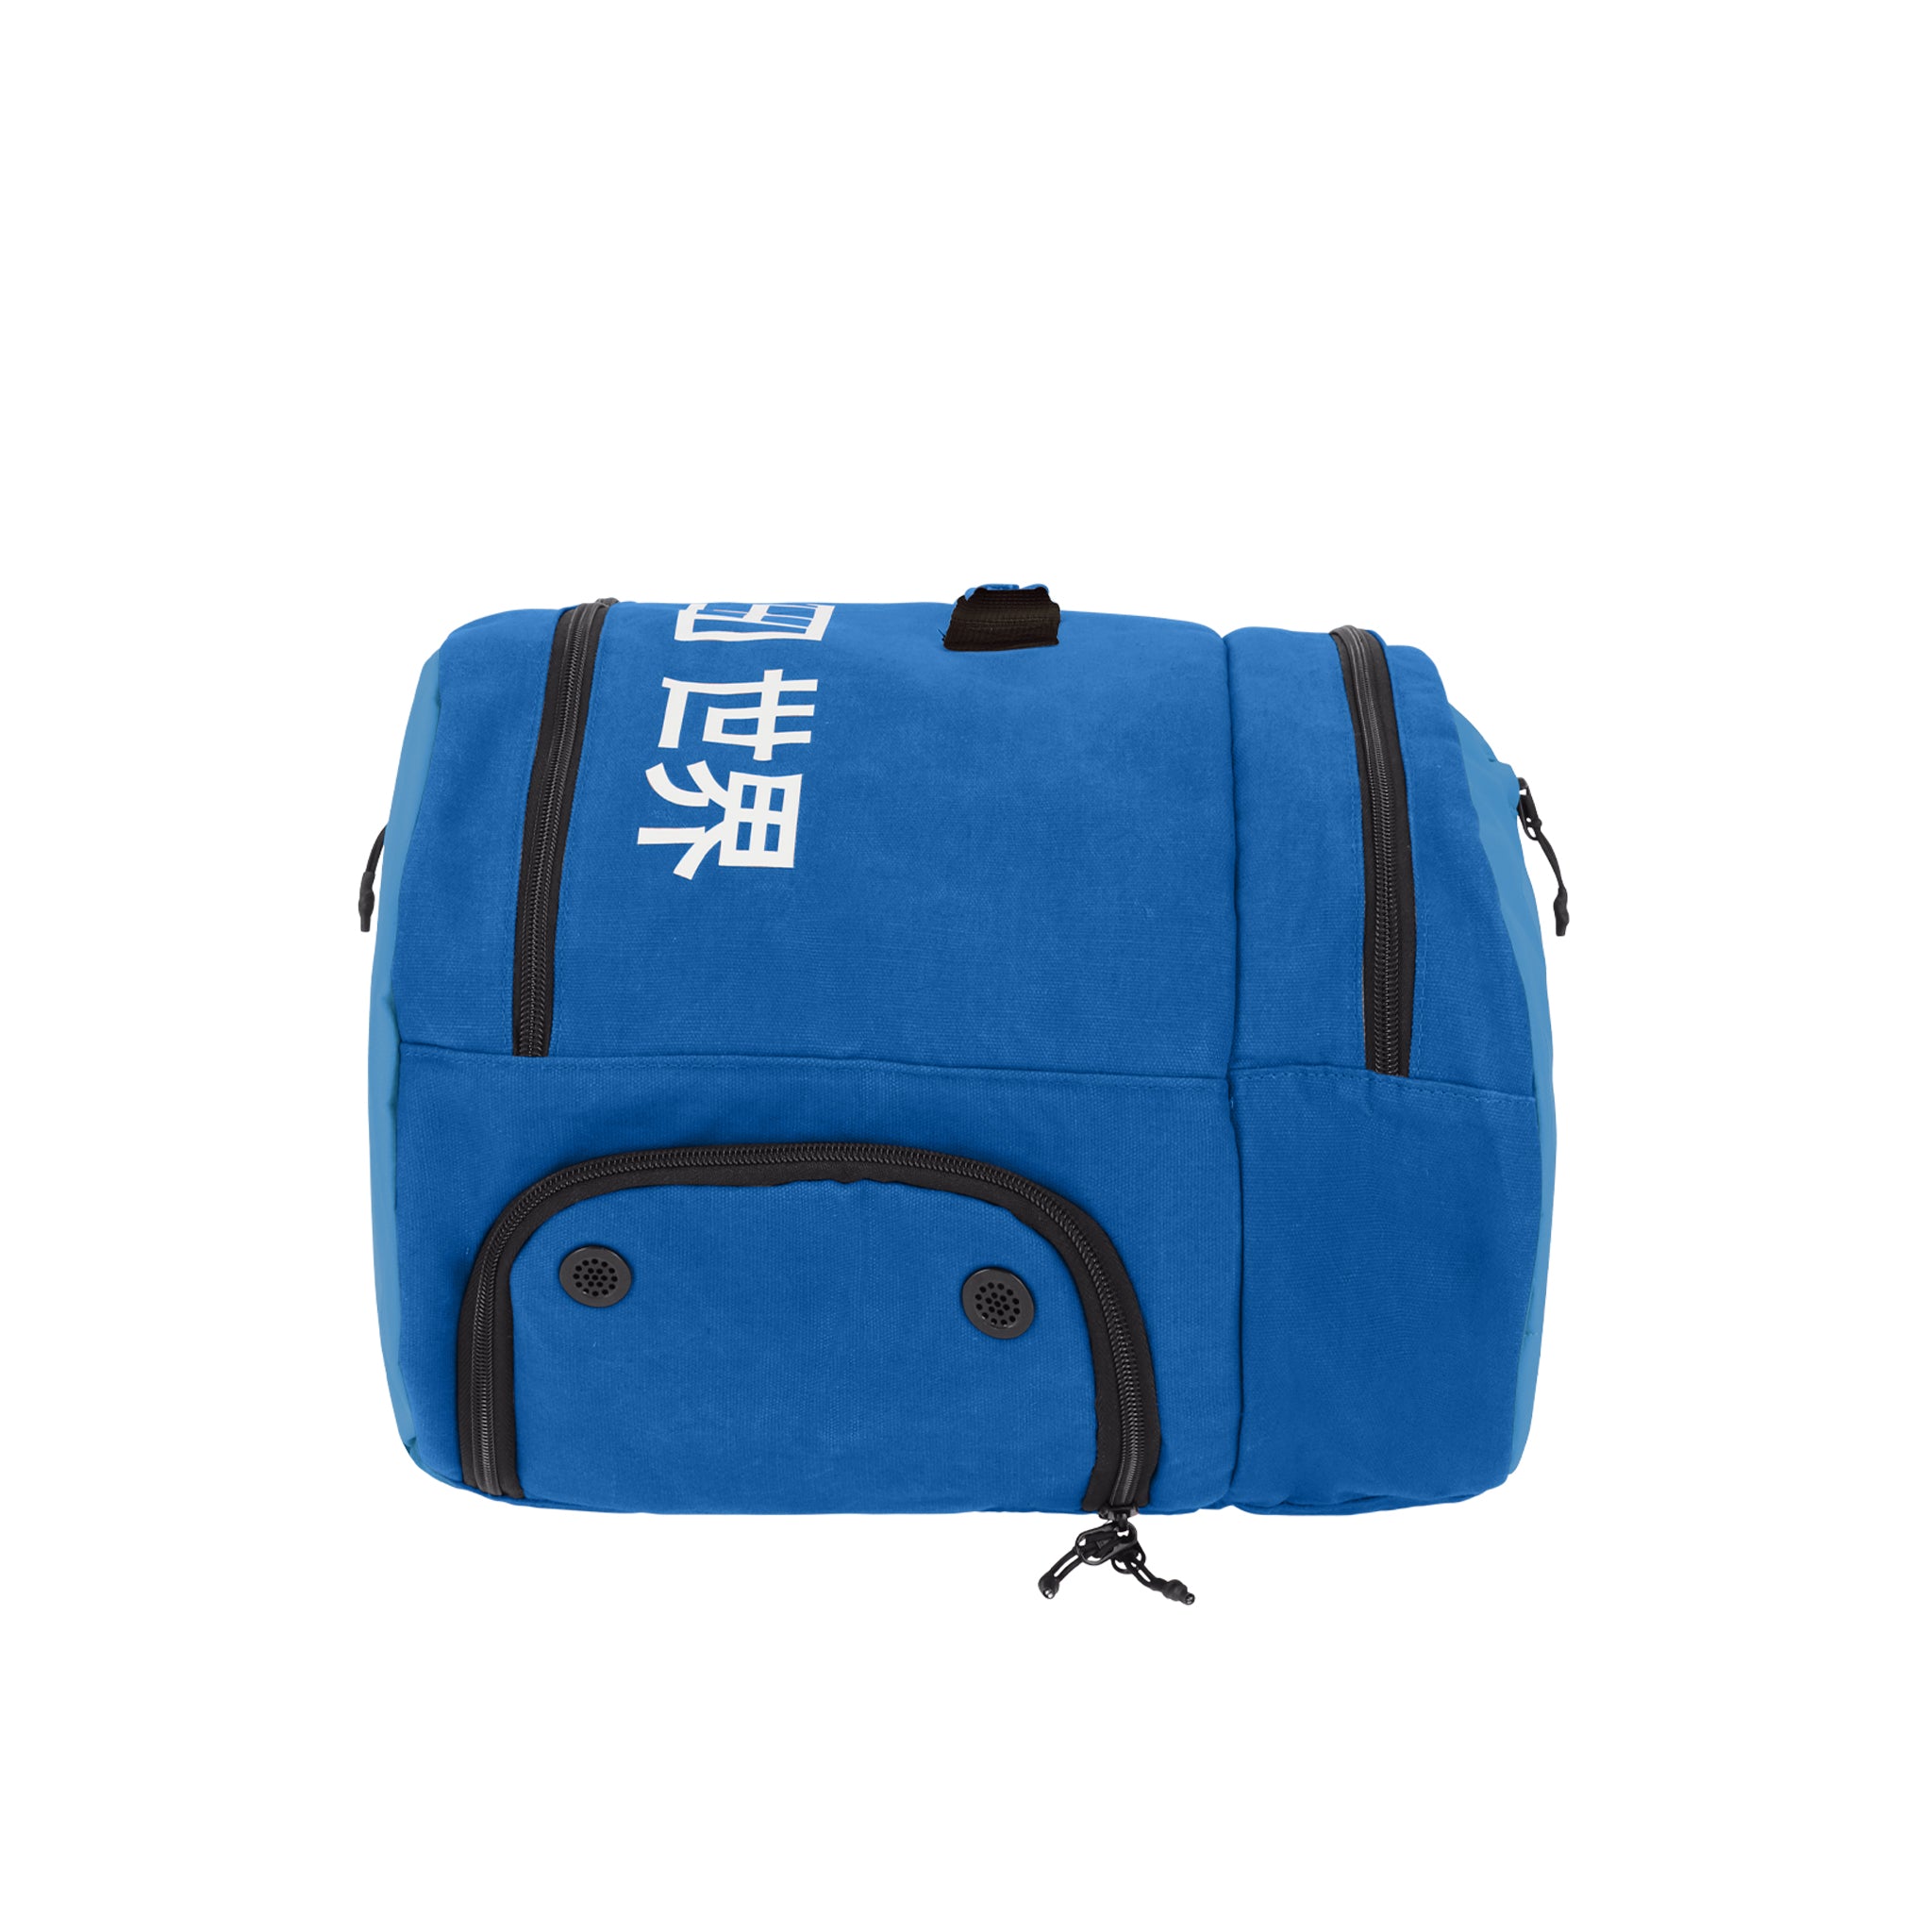 Osaka Pro Tour Medium Padel Bag (Blue/White)